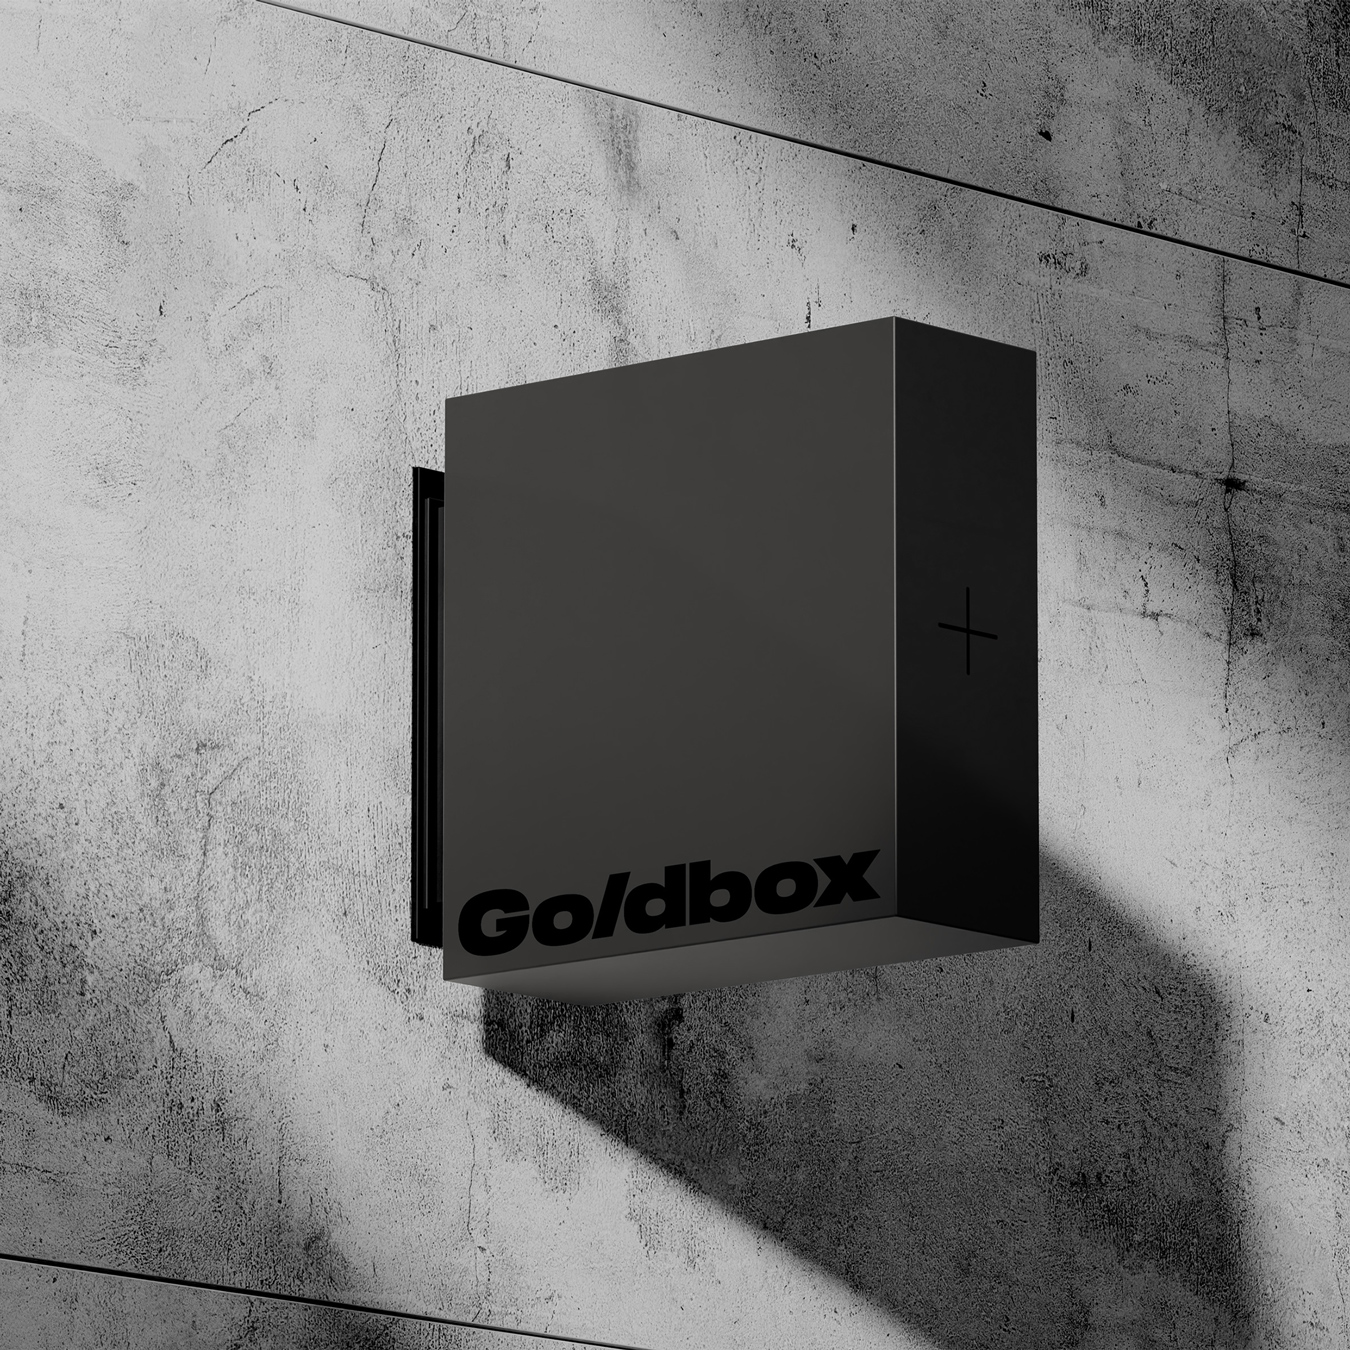 Goldbox_Sign_1x1